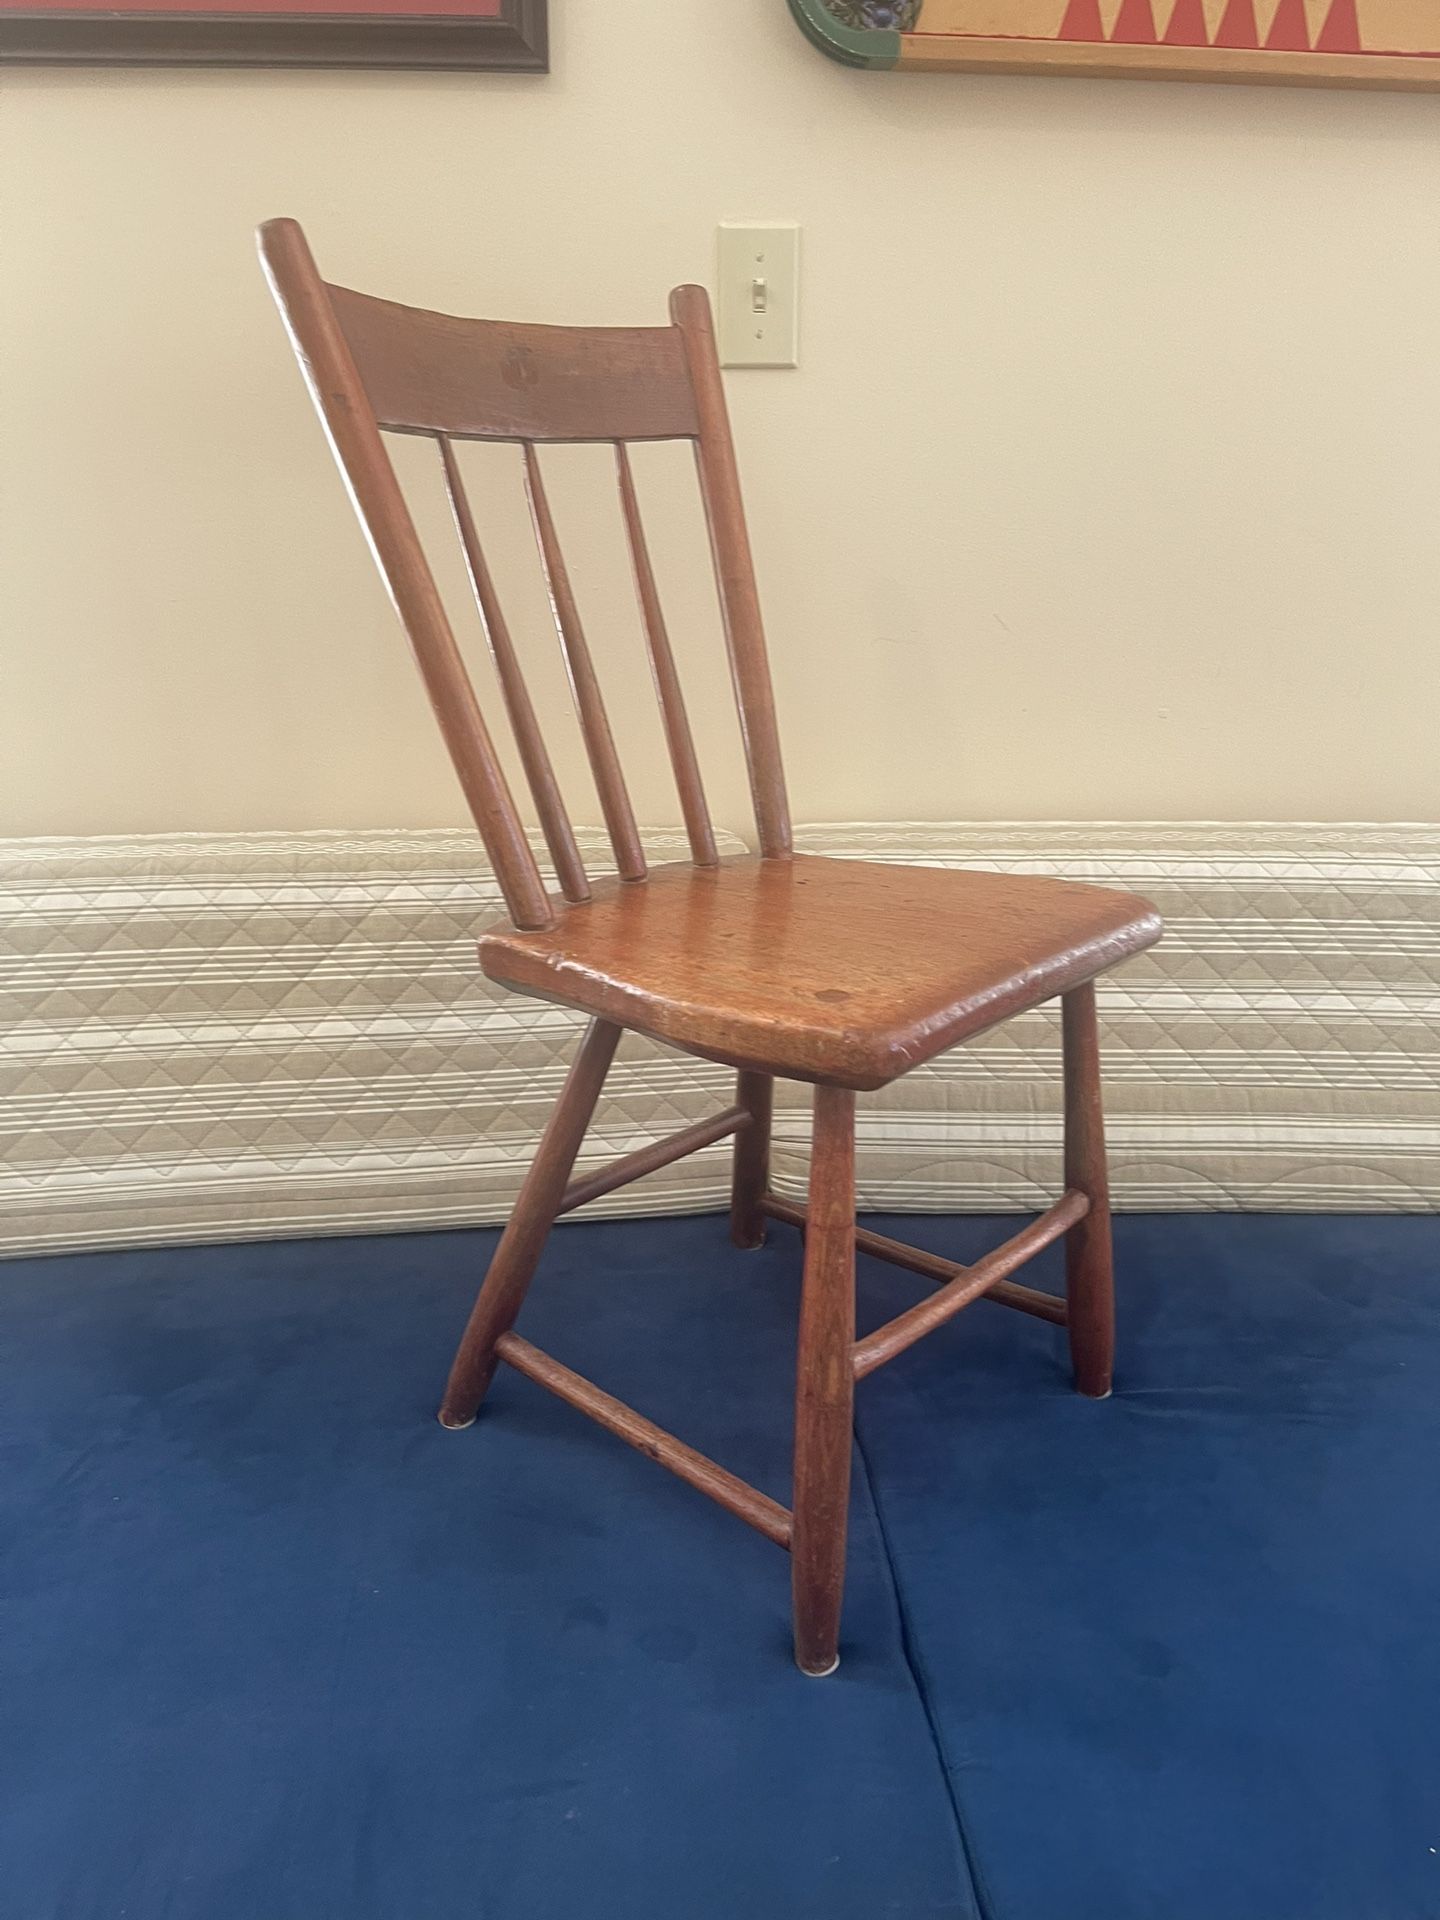 Primitive Antique Chair